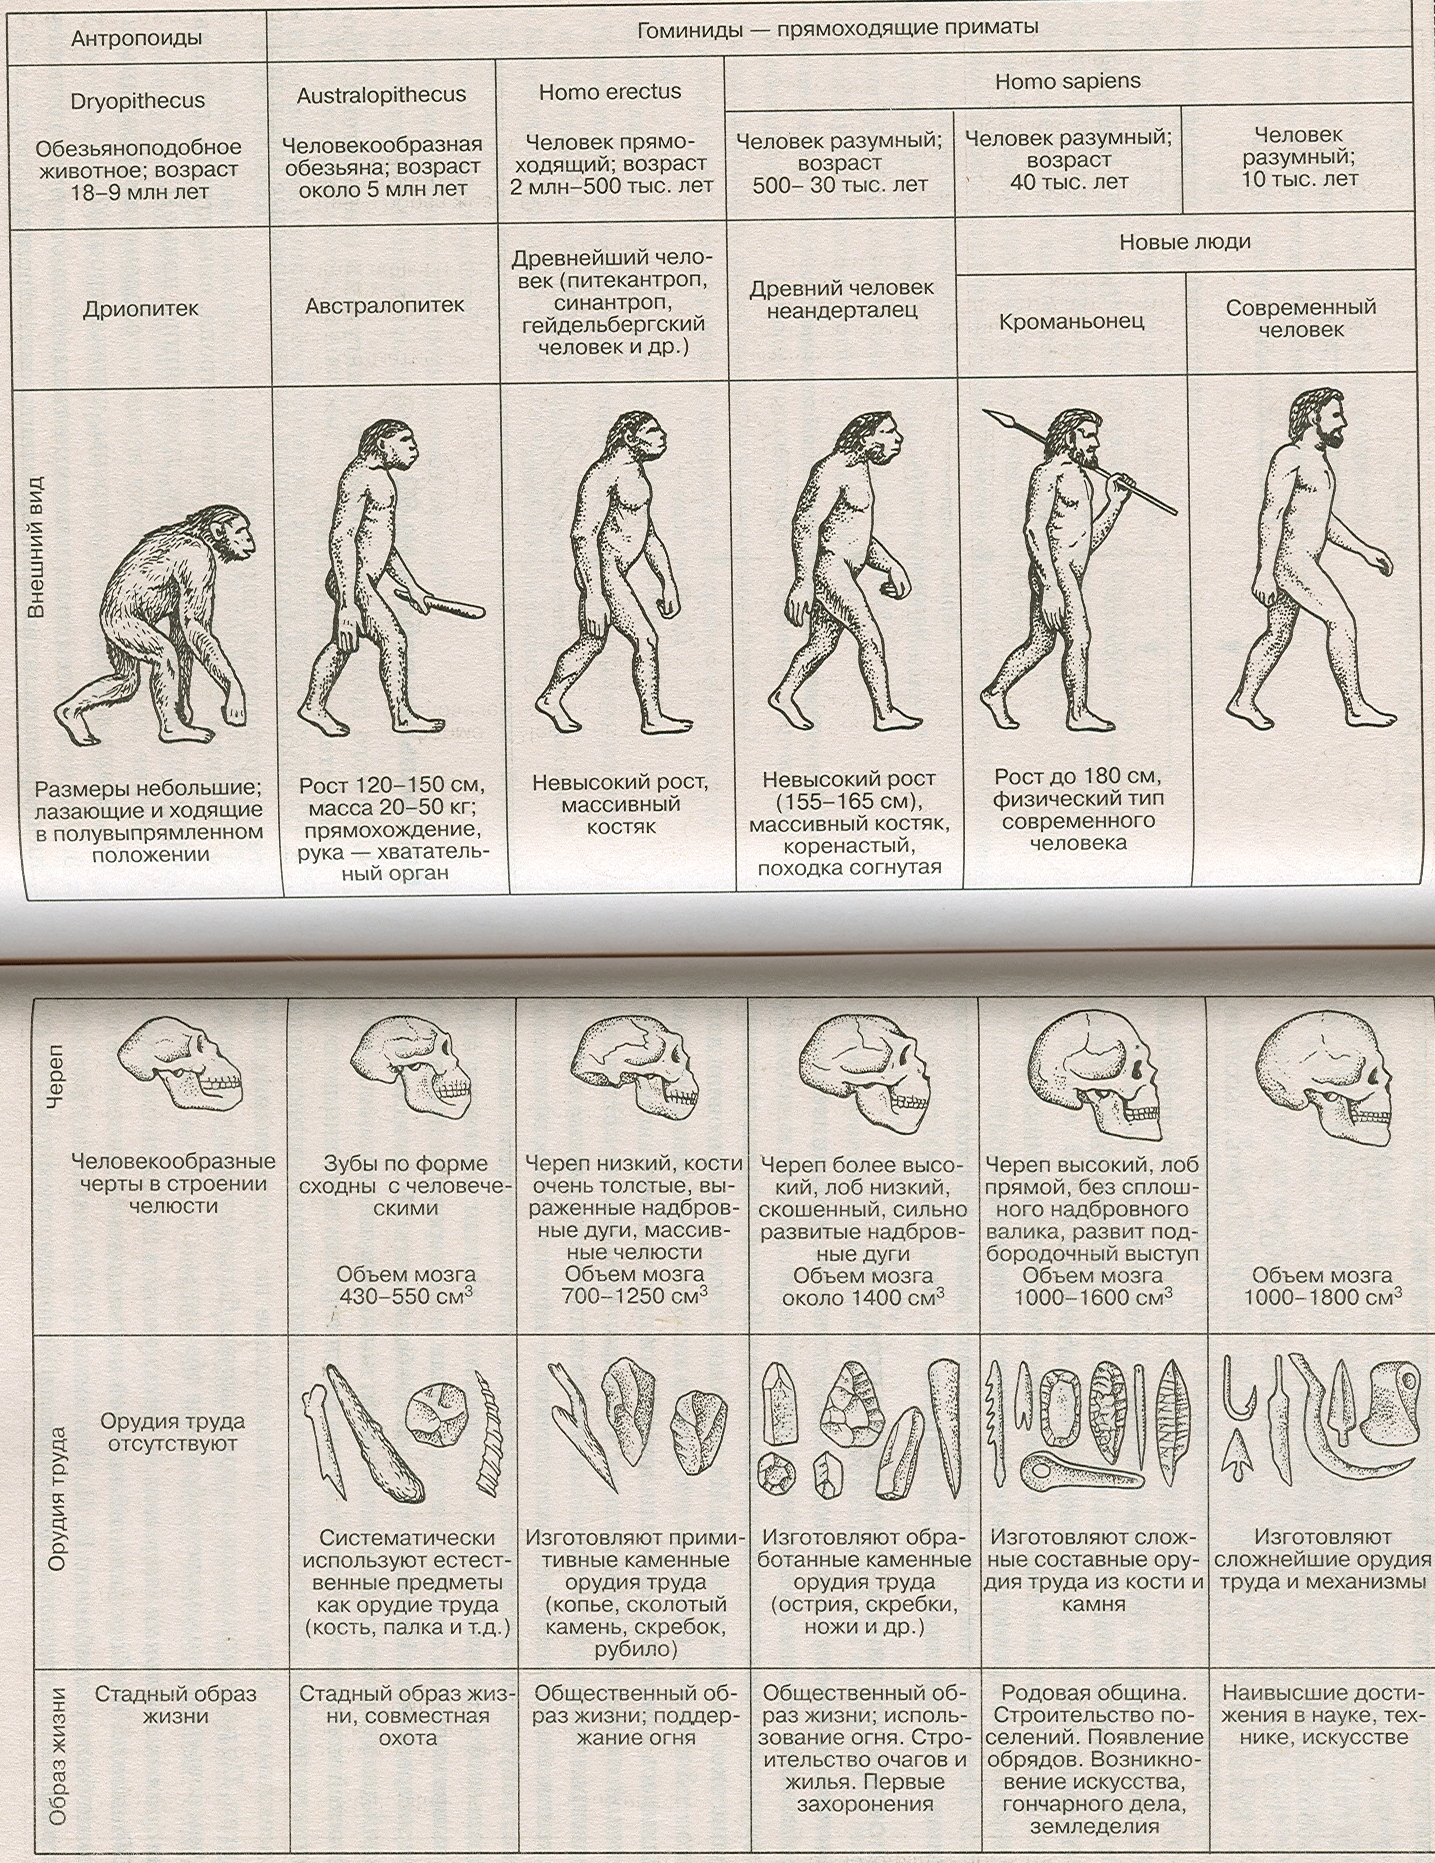 Древние люди в хронологической последовательности. Этапы развития человека таблица этапы антропогенеза. Этапы эволюции человека таблица дриопитек. Основные стадии развития человека таблица. Стадия развития человека таблица по биологии.